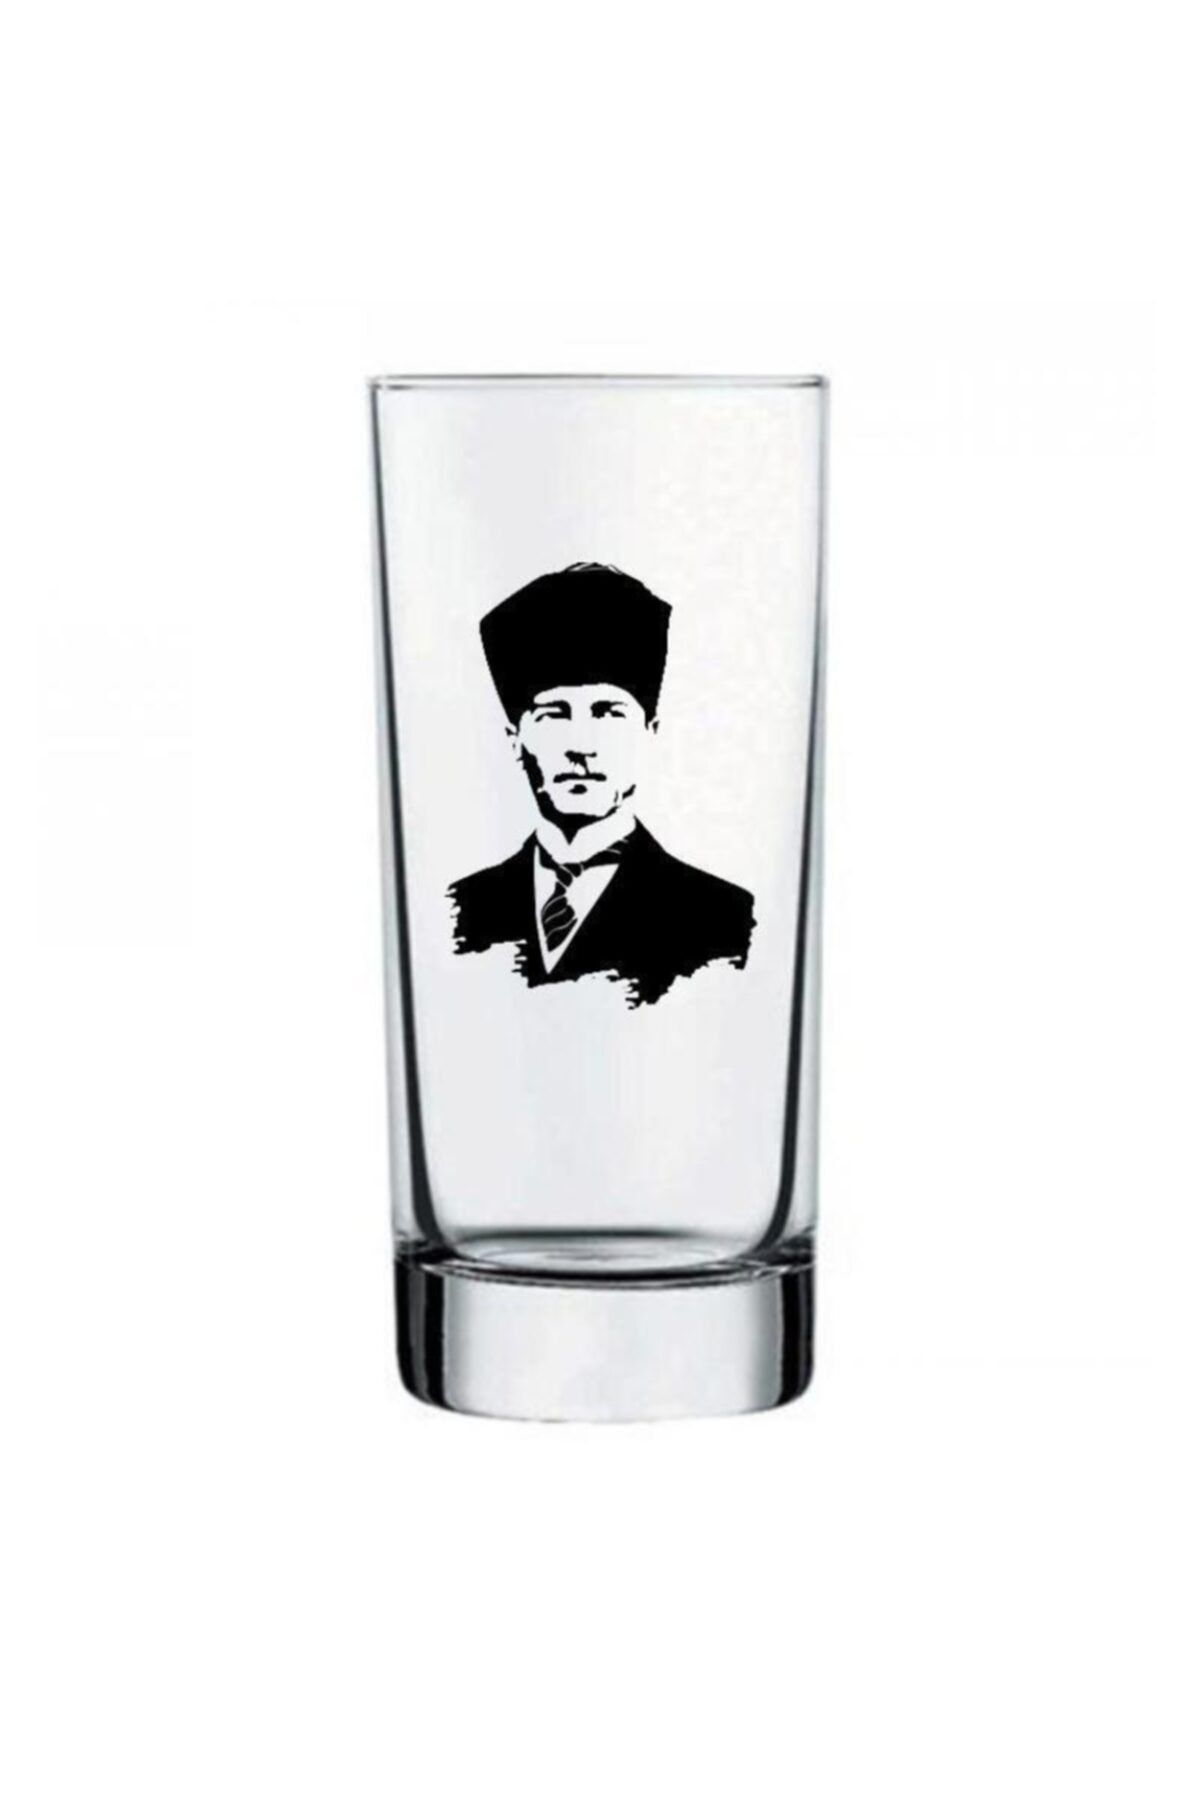 bukashops Atatürk Rakı Bardağı